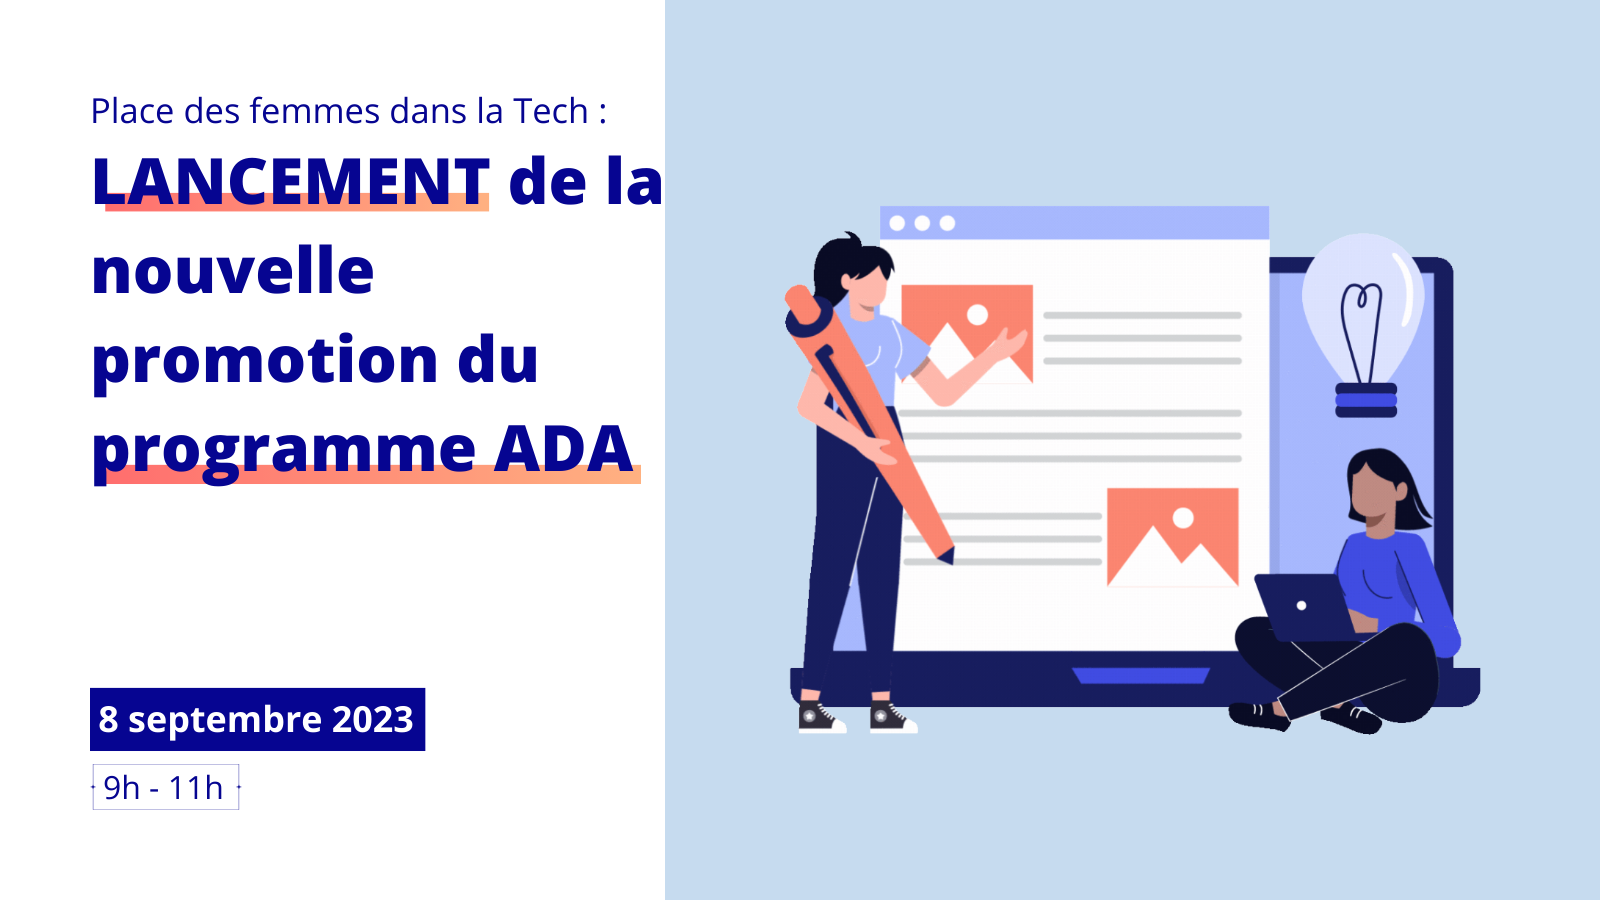 Place des femmes dans la Tech : LANCEMENT de la nouvelle promotion du programme ADA 8 septembre 2023 9h - 11h